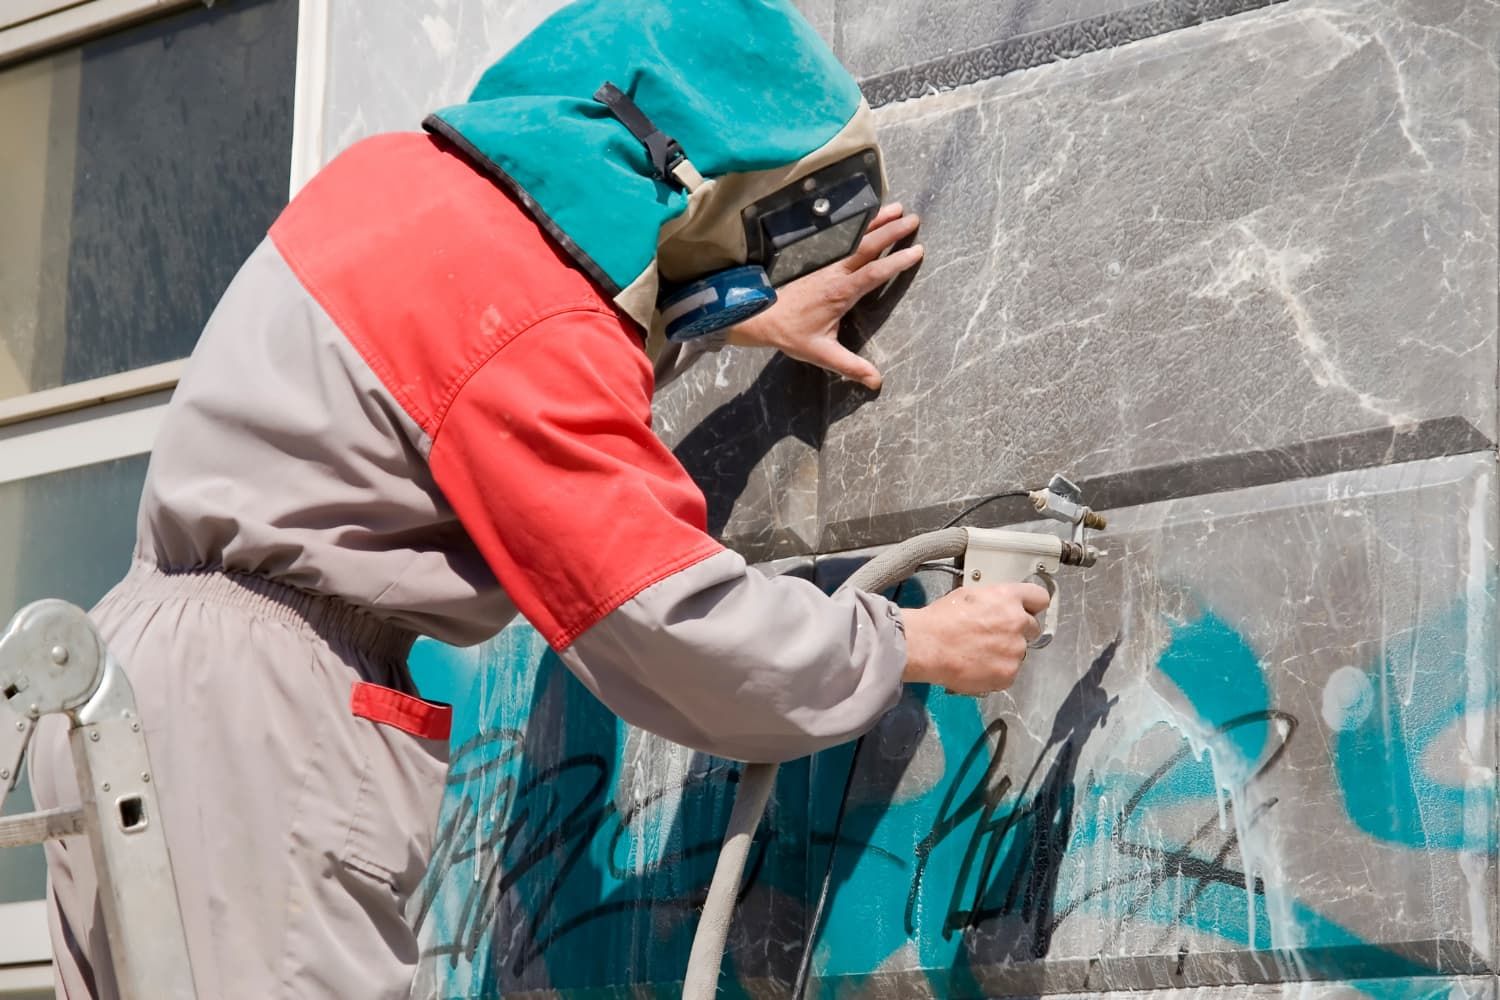 clean%20graffiti-58d3c668 Vandalism